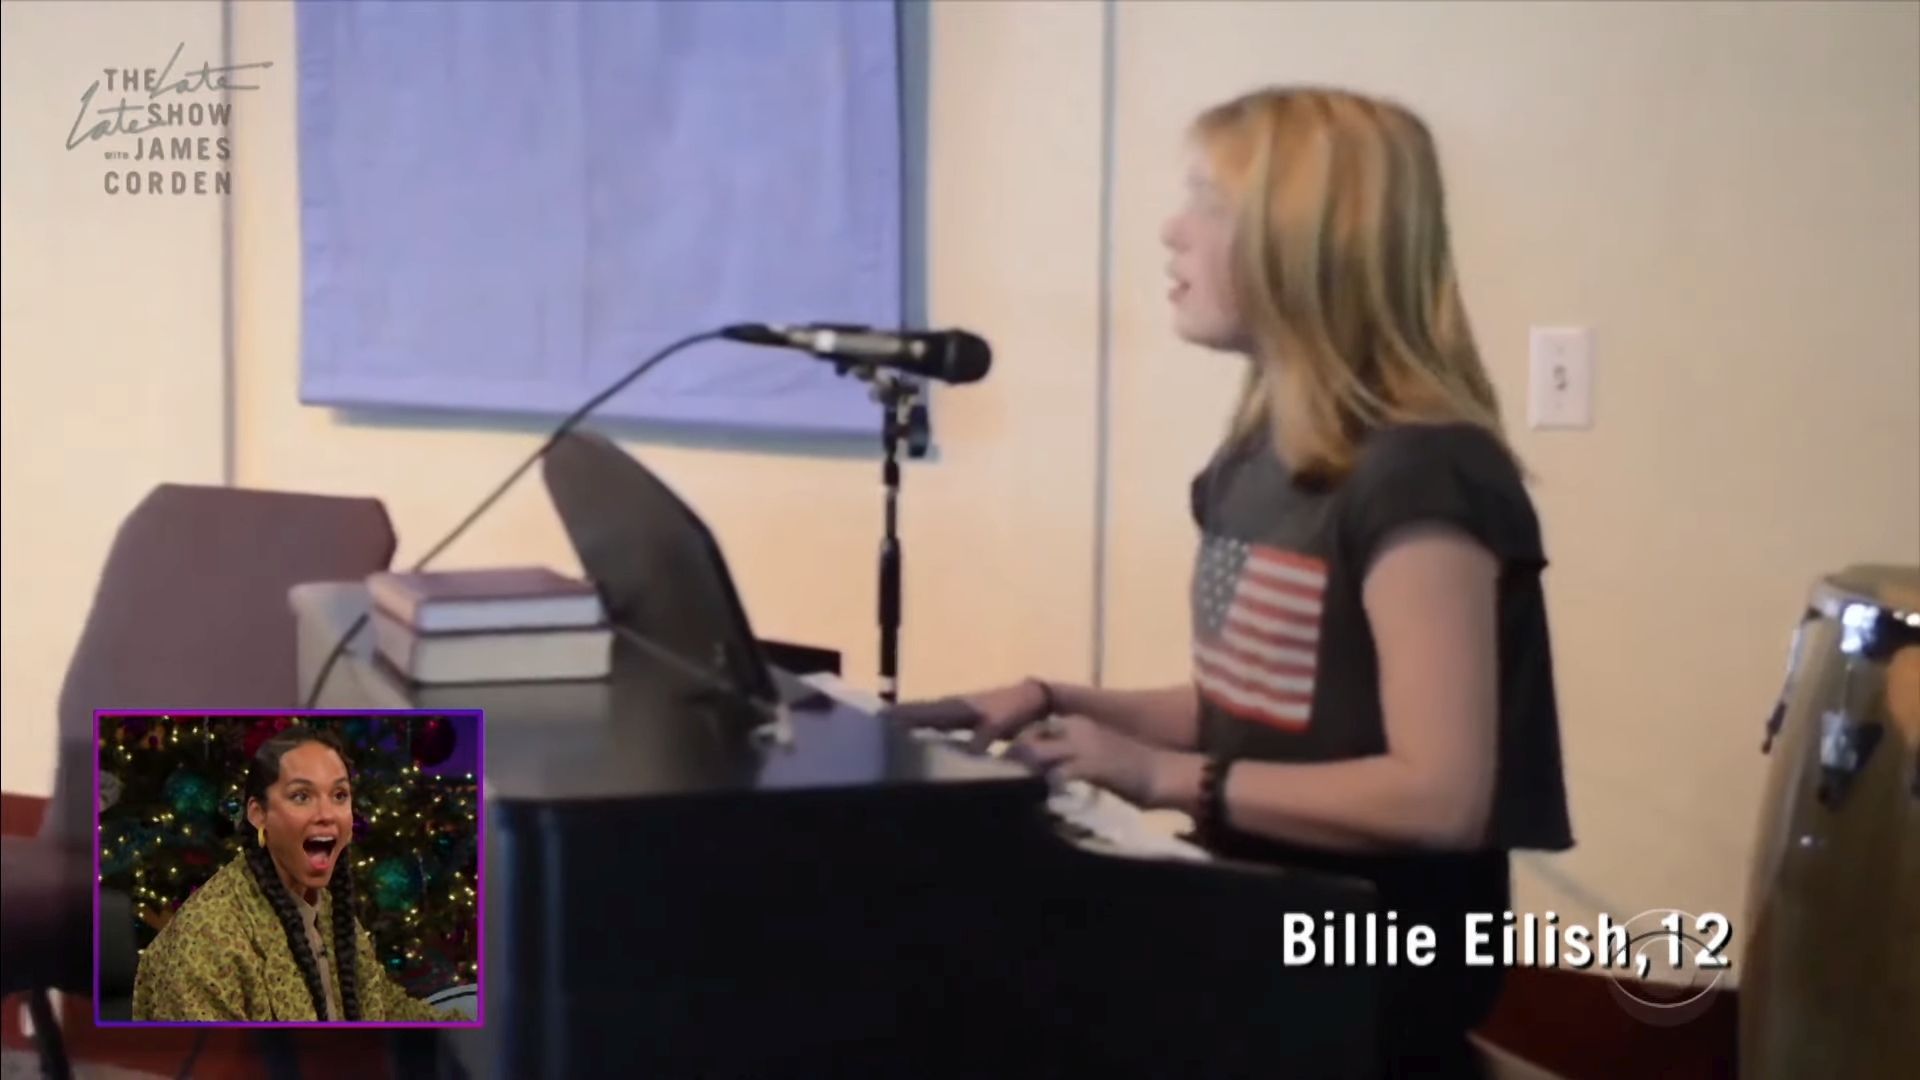 Íme egy videó Billie Eilish-ról, ahogy 12 évesen Alicia Keys slágerét énekli